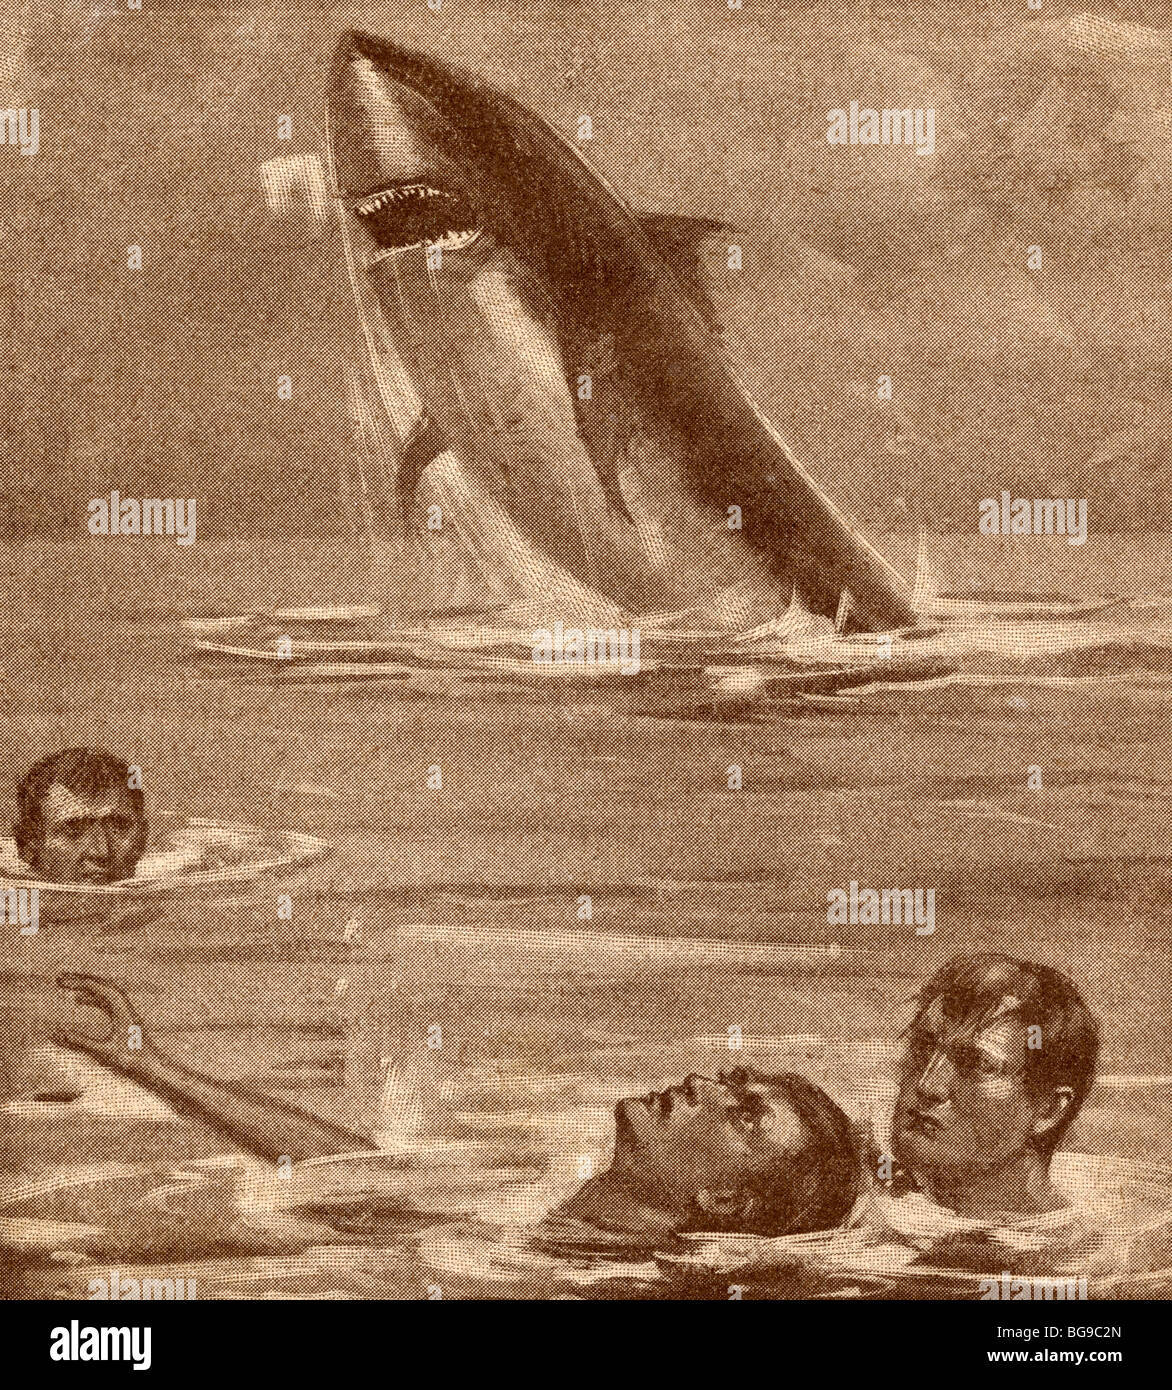 Xix secolo illustrazione dell'uomo il salvataggio del nuotatore con la shark in background. Foto Stock